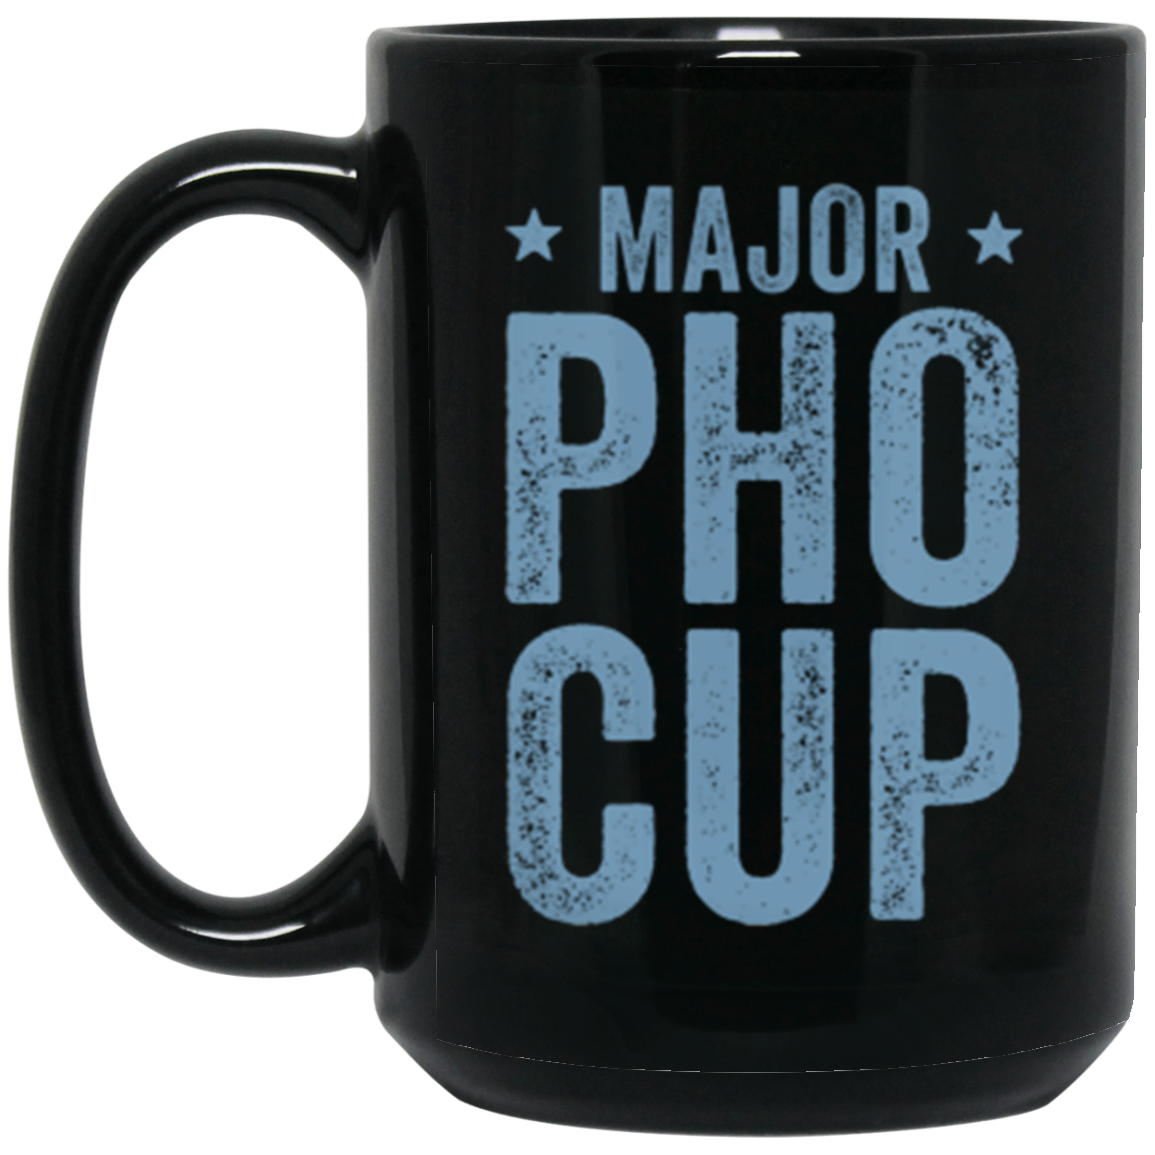 Major Pho Cup 15 oz. Black Mug